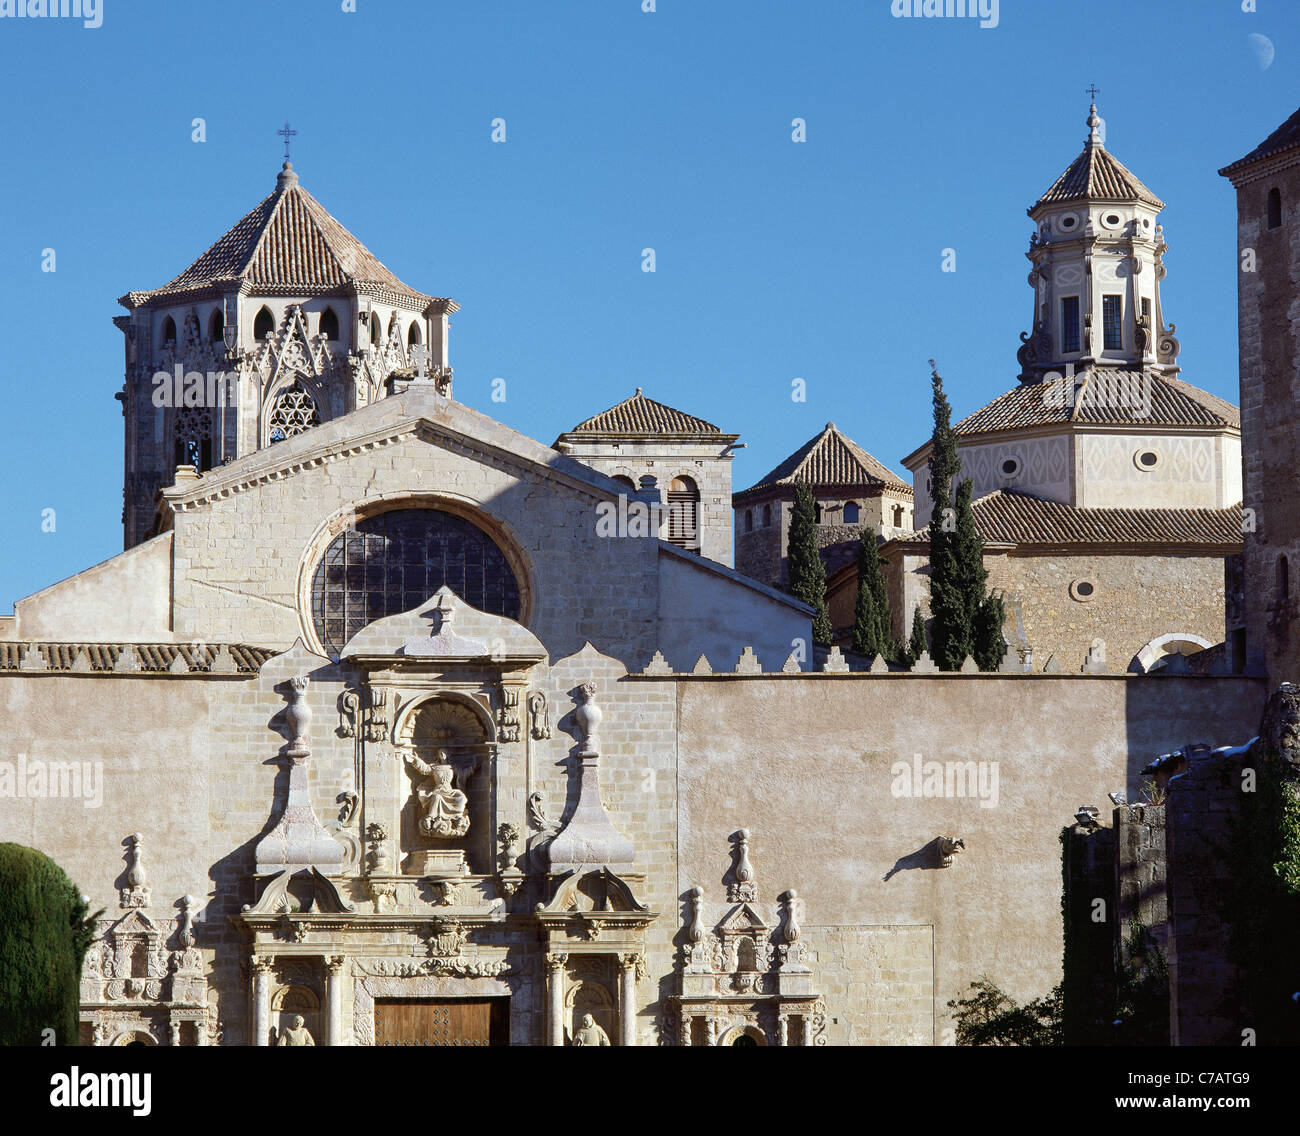 Spain. Catalonia. Royal Abbey of Santa Maria de Poblet. 12th century. Stock Photo